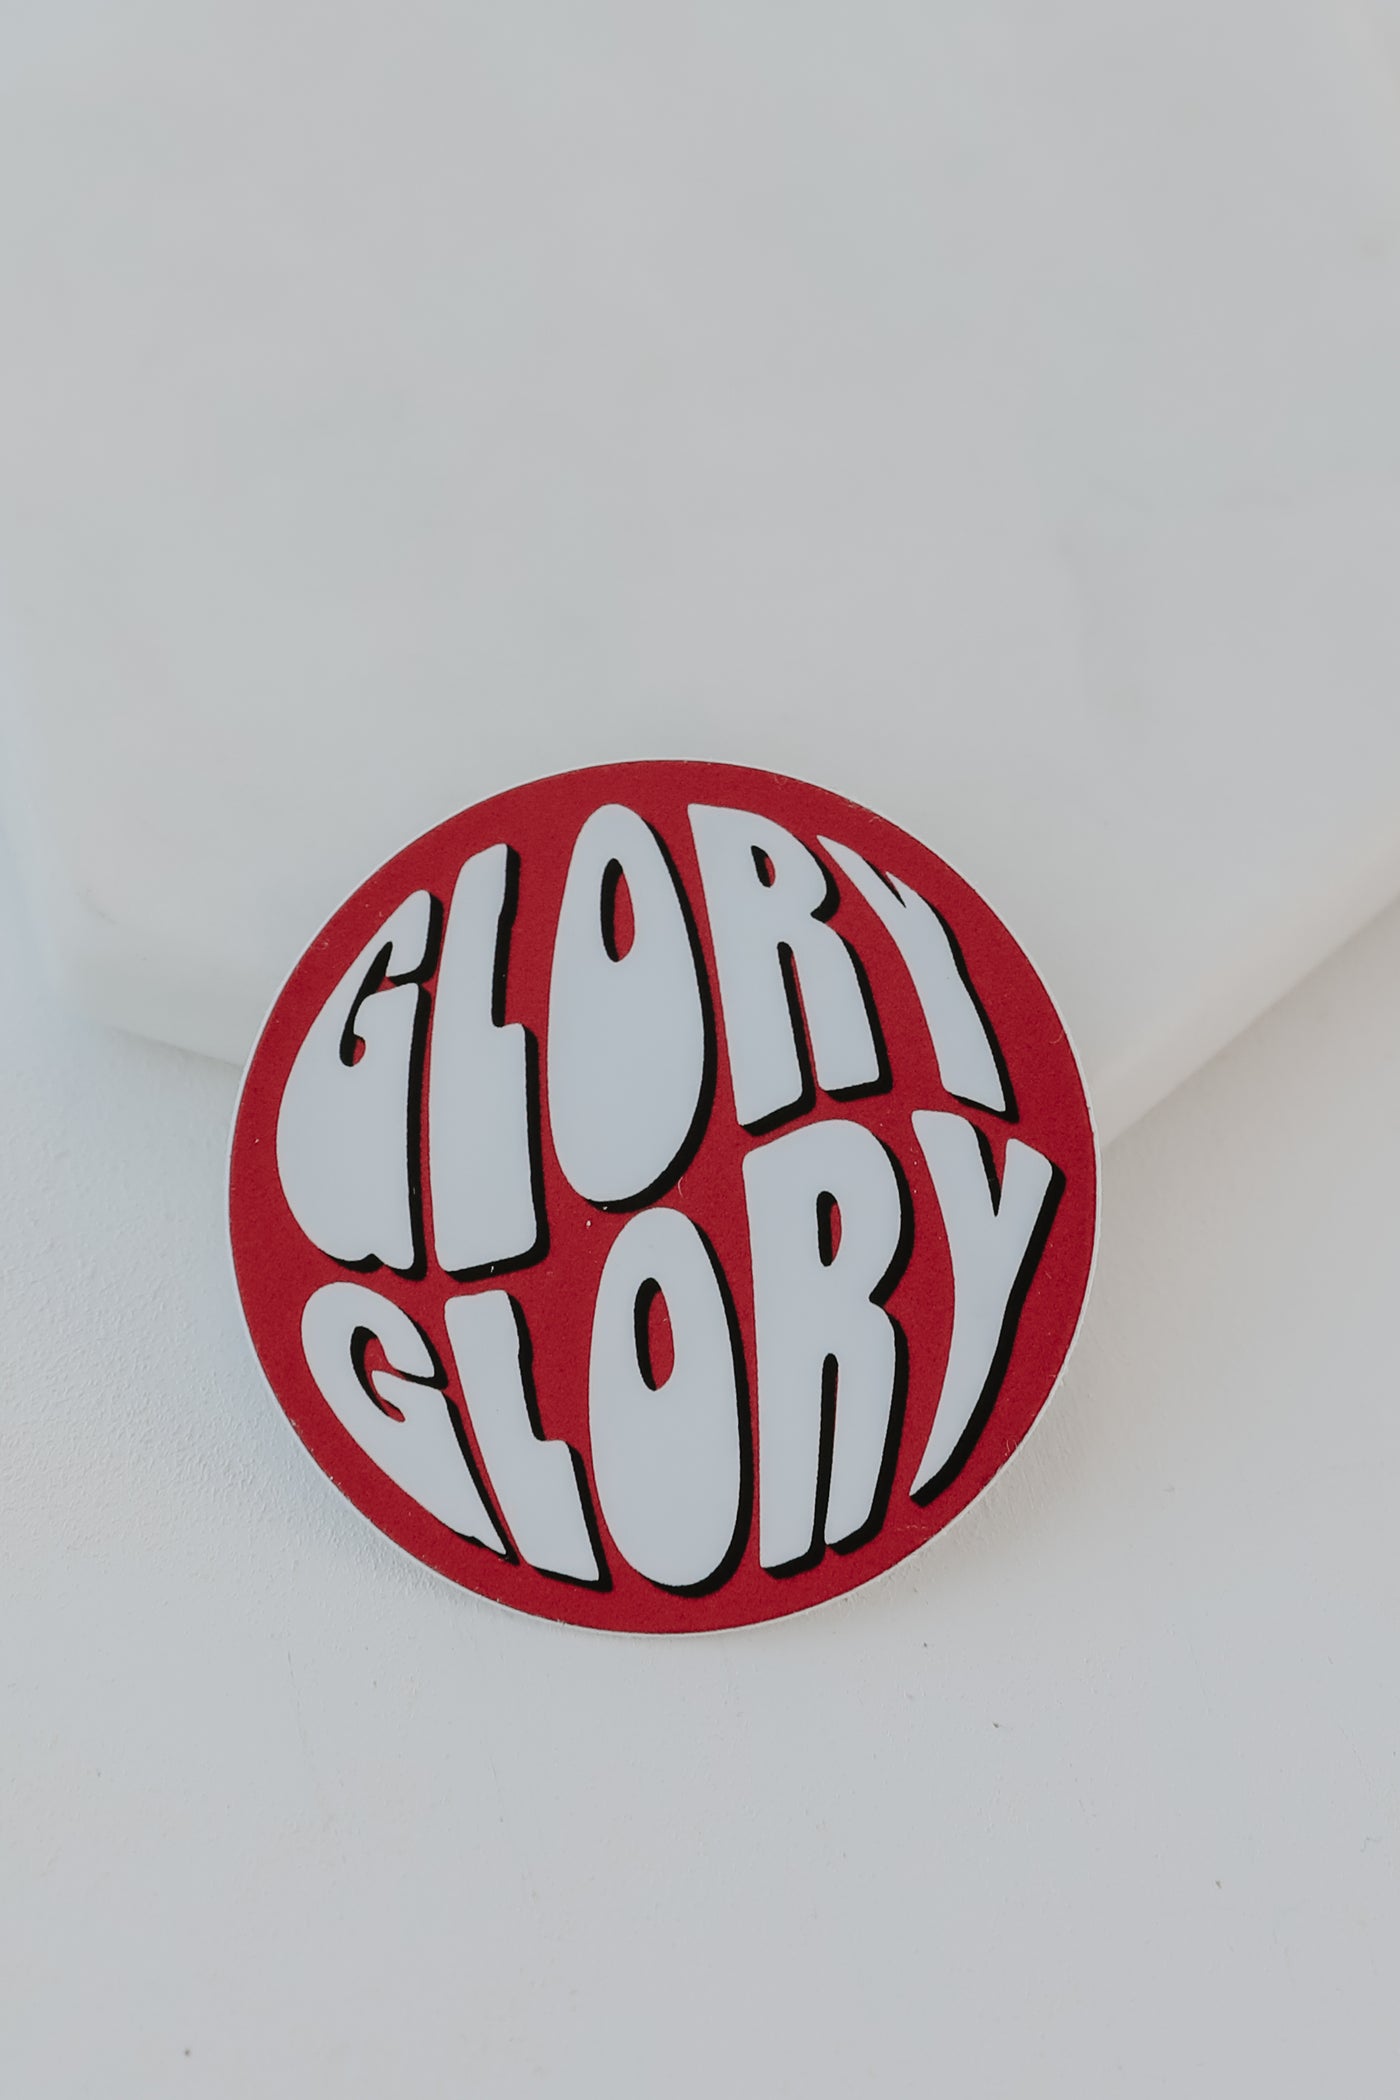 Glory Glory Circle Sticker from dress up